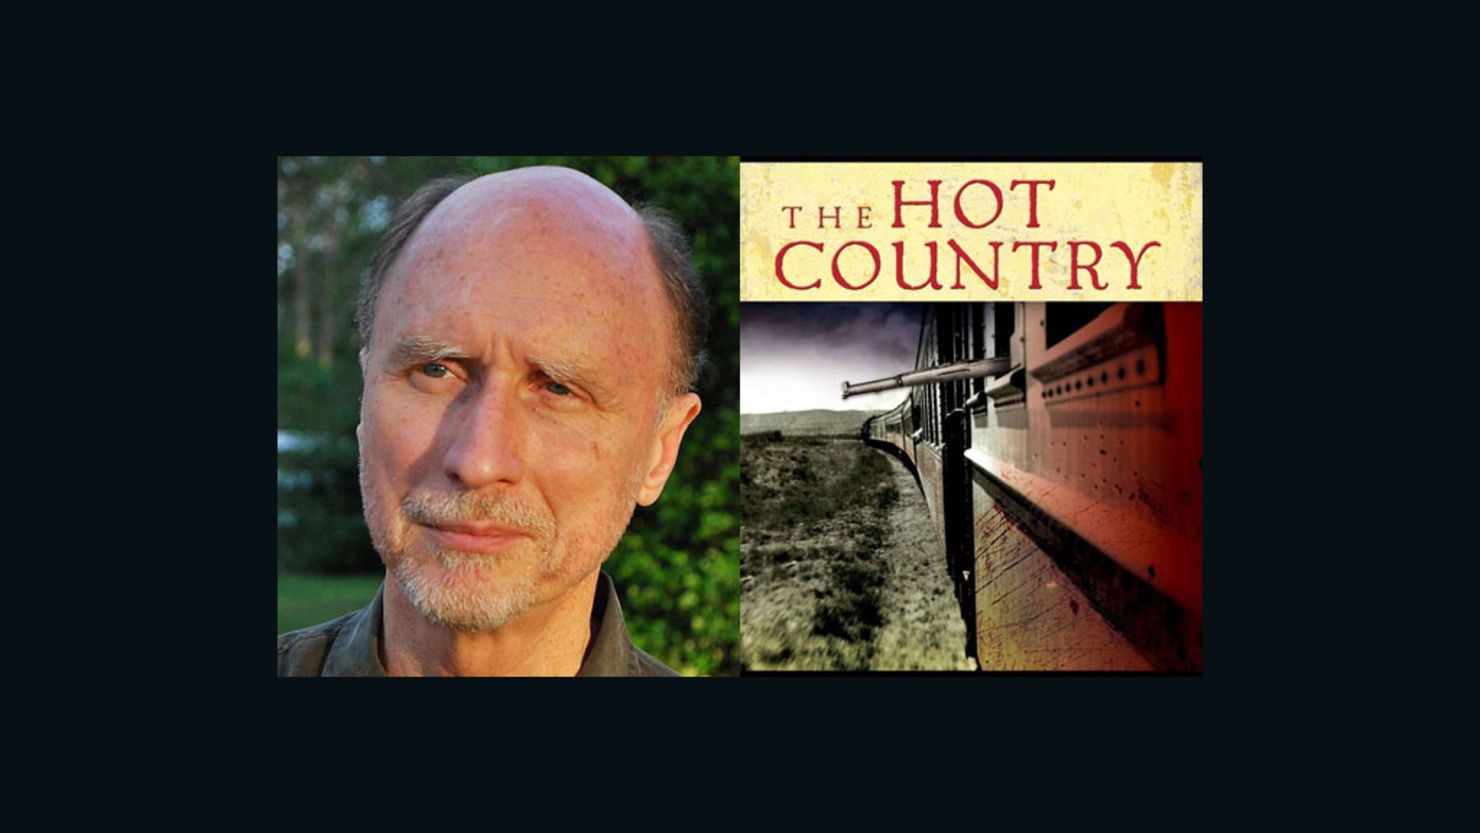 Robert Olen Butler's new book is "The Hot Country."